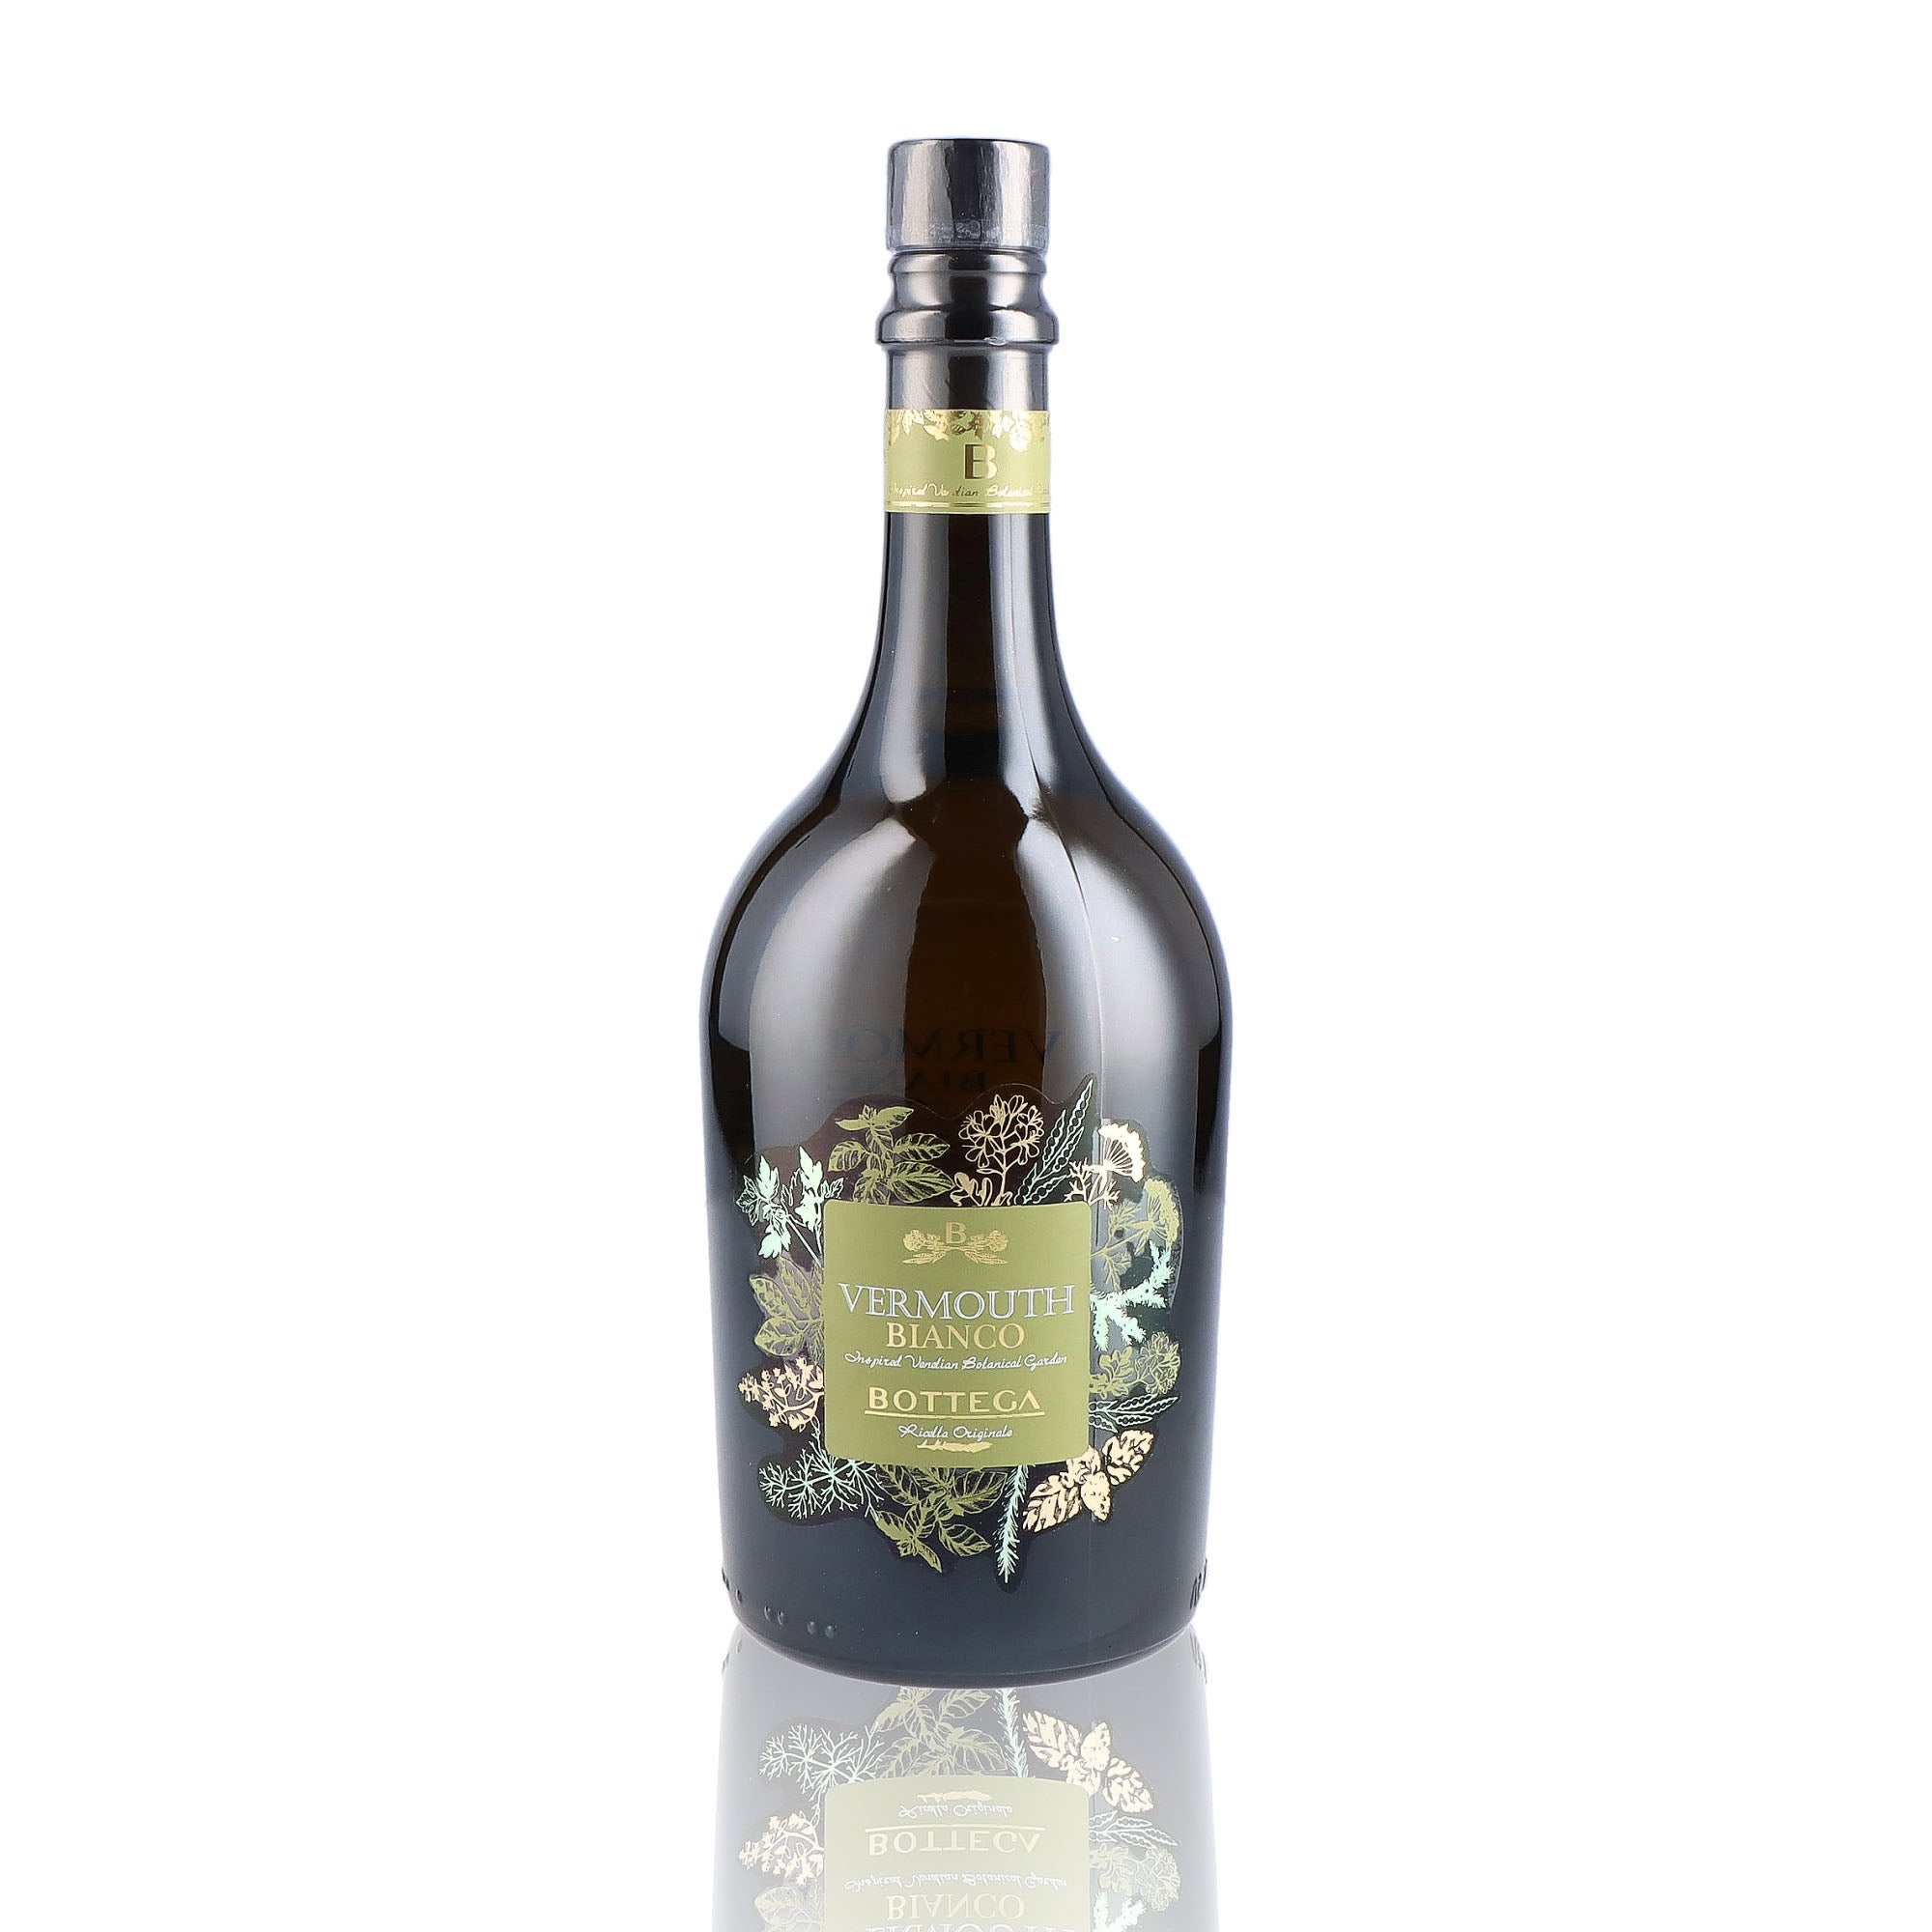 Une bouteille de vermouth, de la marque Bottega, nommée Bianco.